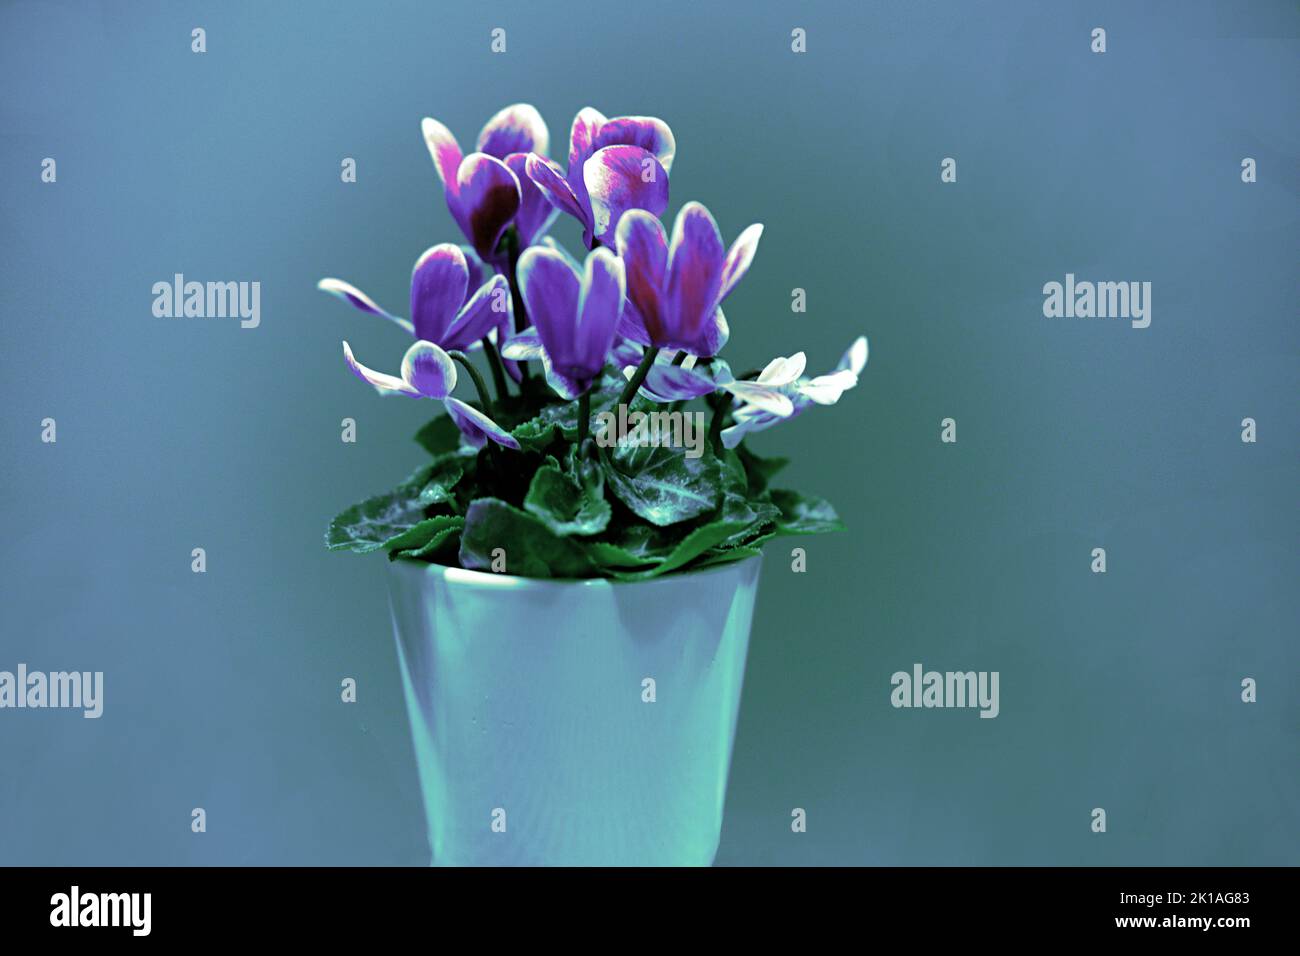 Alpenveilchen einzelner Blumenstock mit verschiedenen Farbnuacen grün, hellblau, blau, rosa, gosaschwarz, vielett, braun, Stock Photo